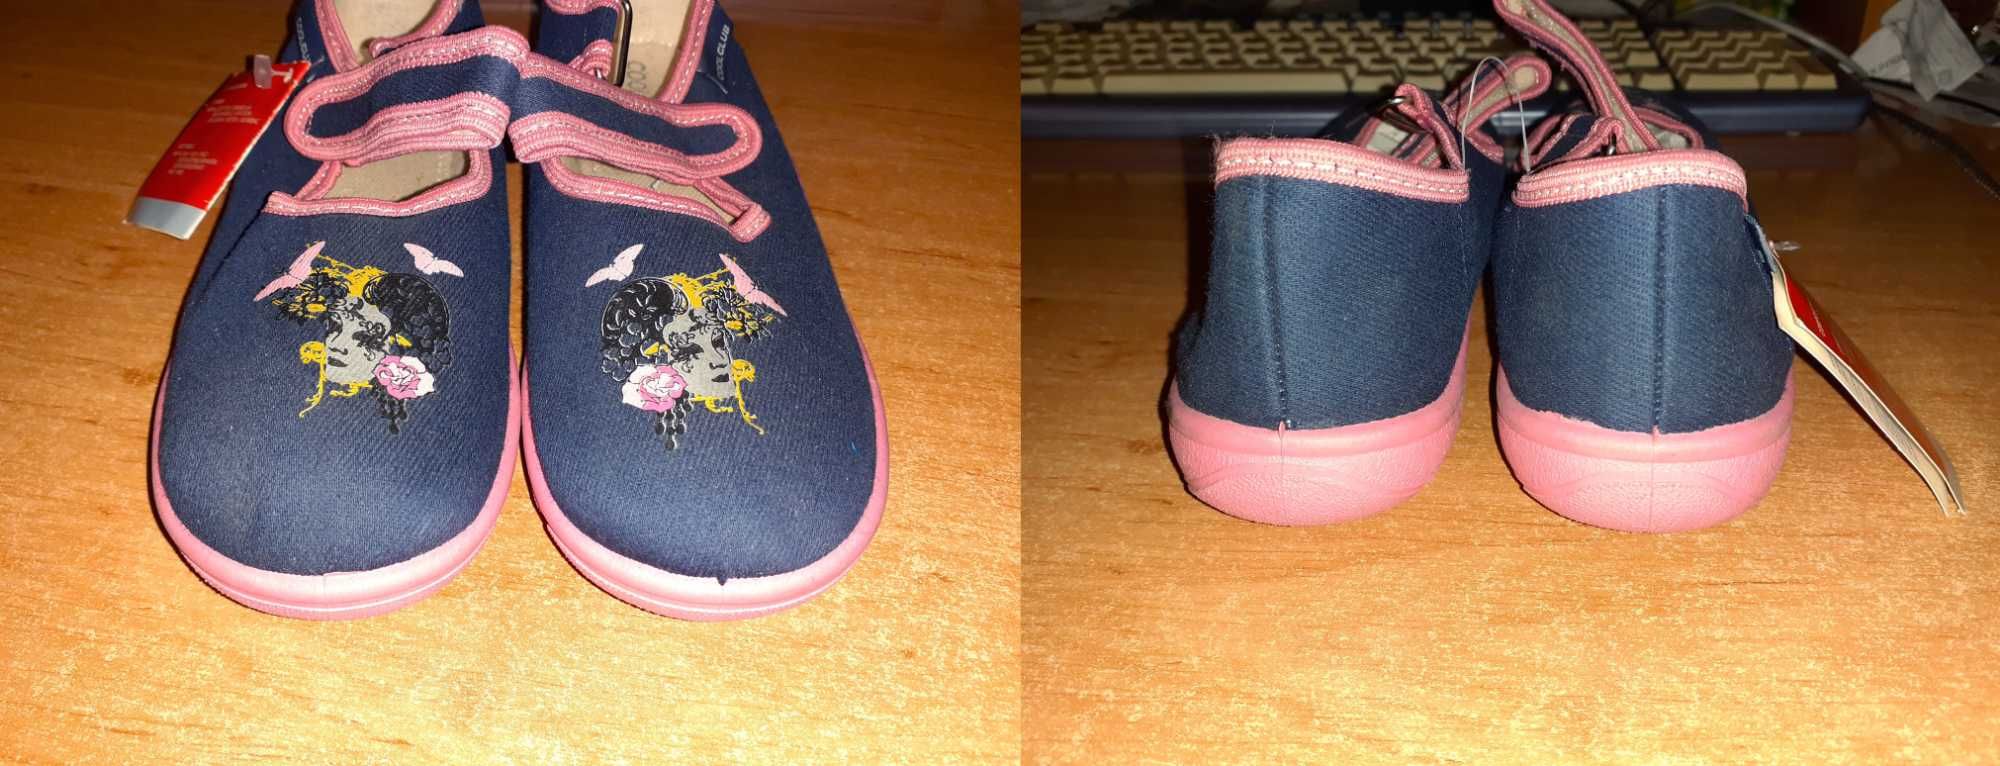 Мокасины на липучках для девочки: сине-розовые, текстильные. 33 размер